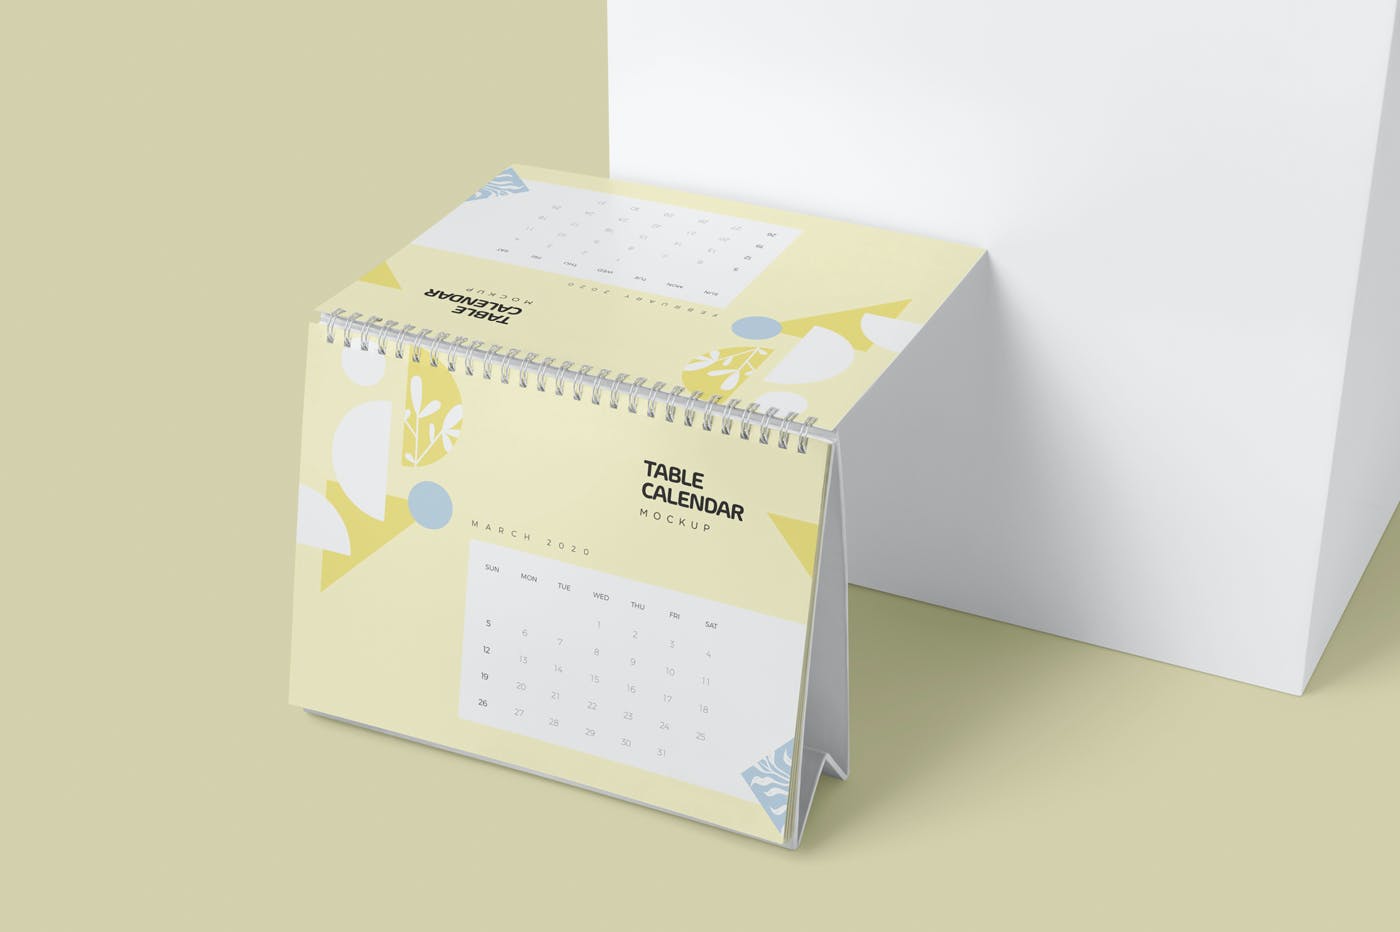 日历翻页表格设计样机模板 Table Calendar Mockups设计素材模板